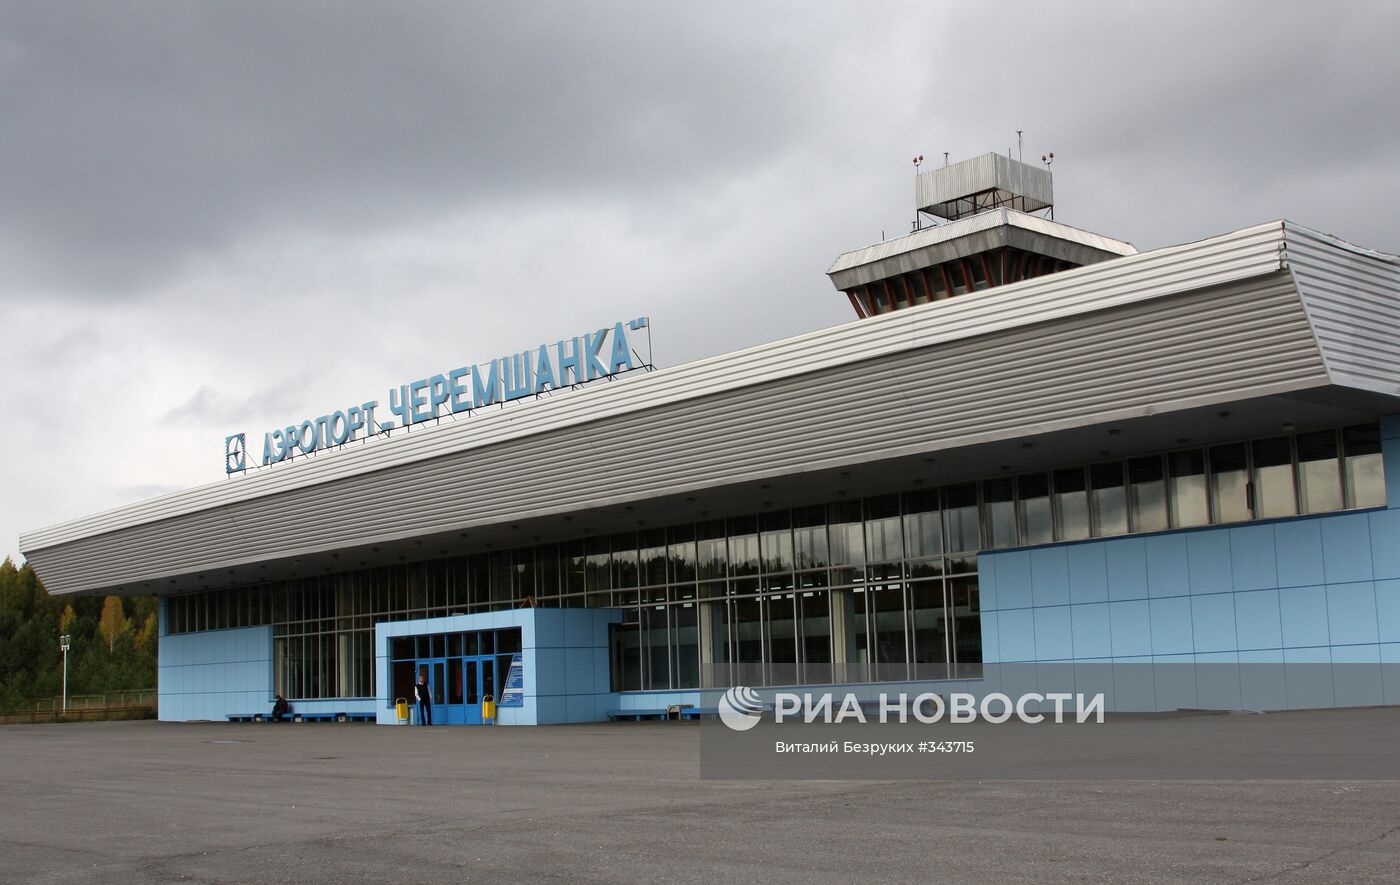 Аэропорт "Черемшанка" в Красноярске